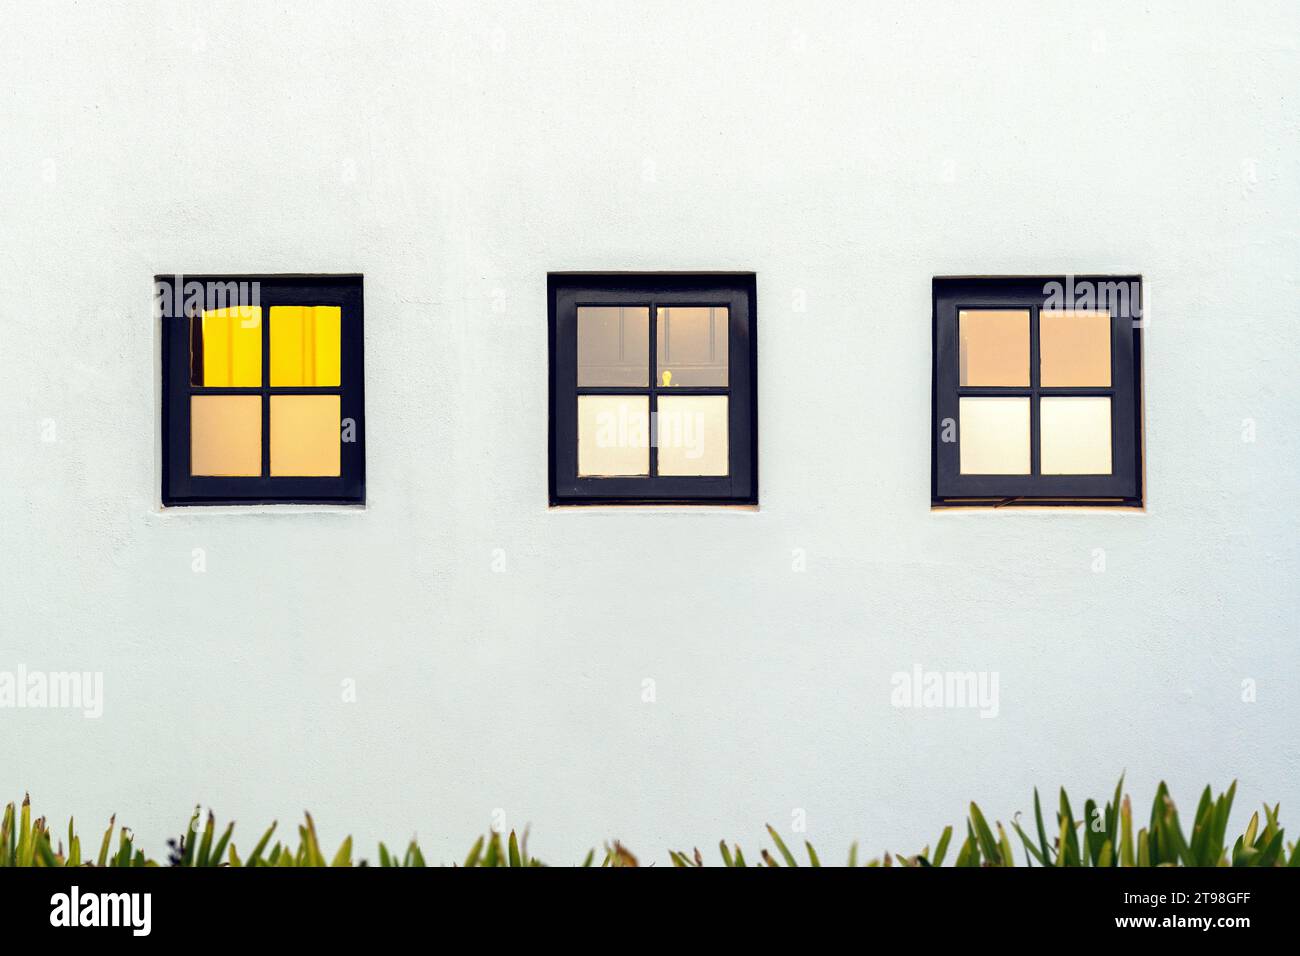 Architektonisches Konzept von 3 quadratischen Fenstern, die in 4 Quadrate unterteilt sind. Stockfoto